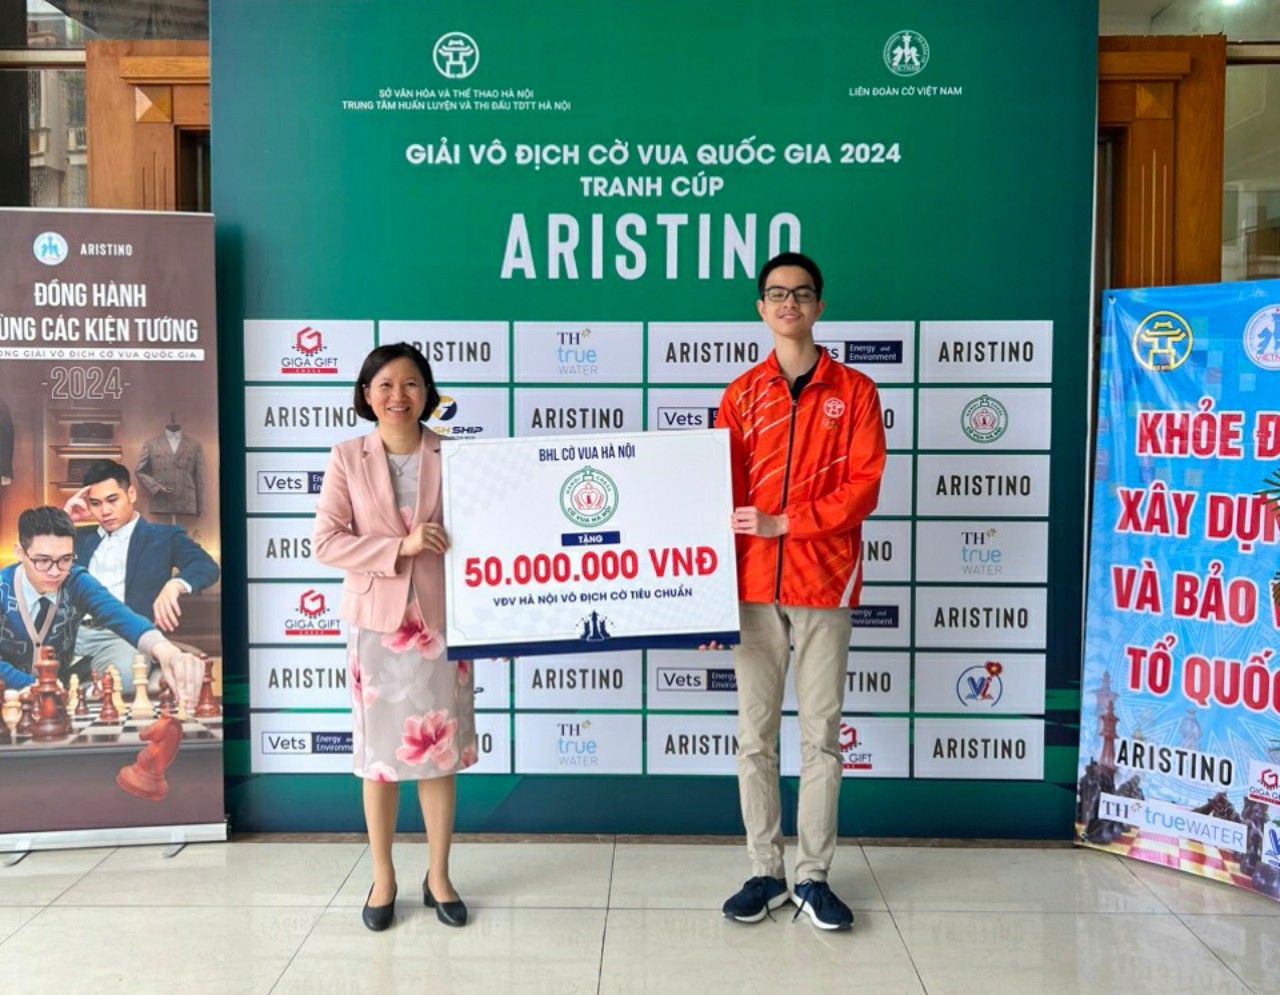 Kỳ thủ 15 tuổi của Hà Nội lên ngôi tại giải vô địch cờ vua quốc gia 2024- Ảnh 7.